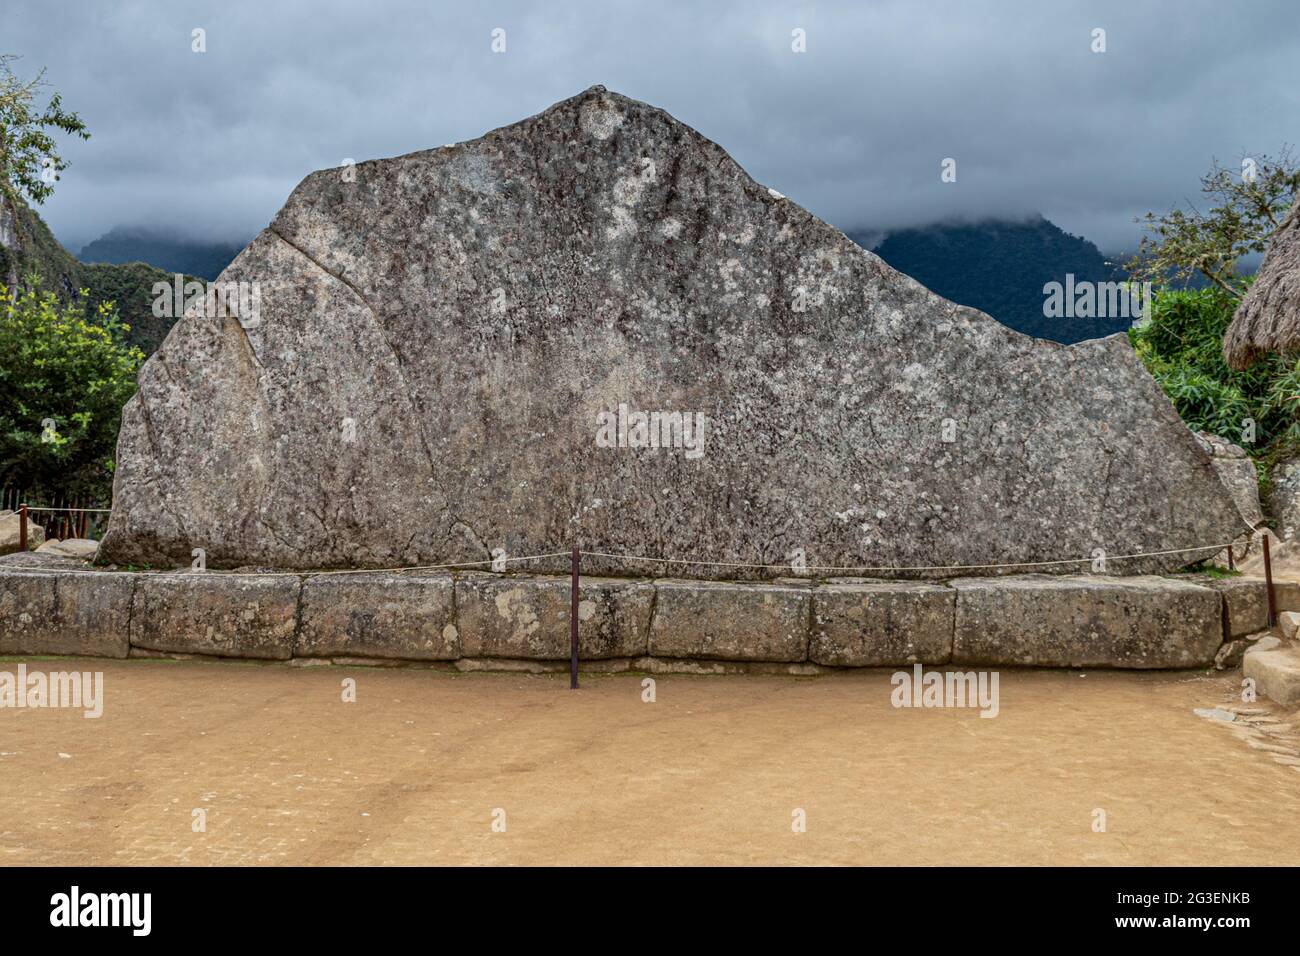 Roche sacrée au complexe archéologique de Machu Picchu, Vallée Sacrée, Pérou Banque D'Images